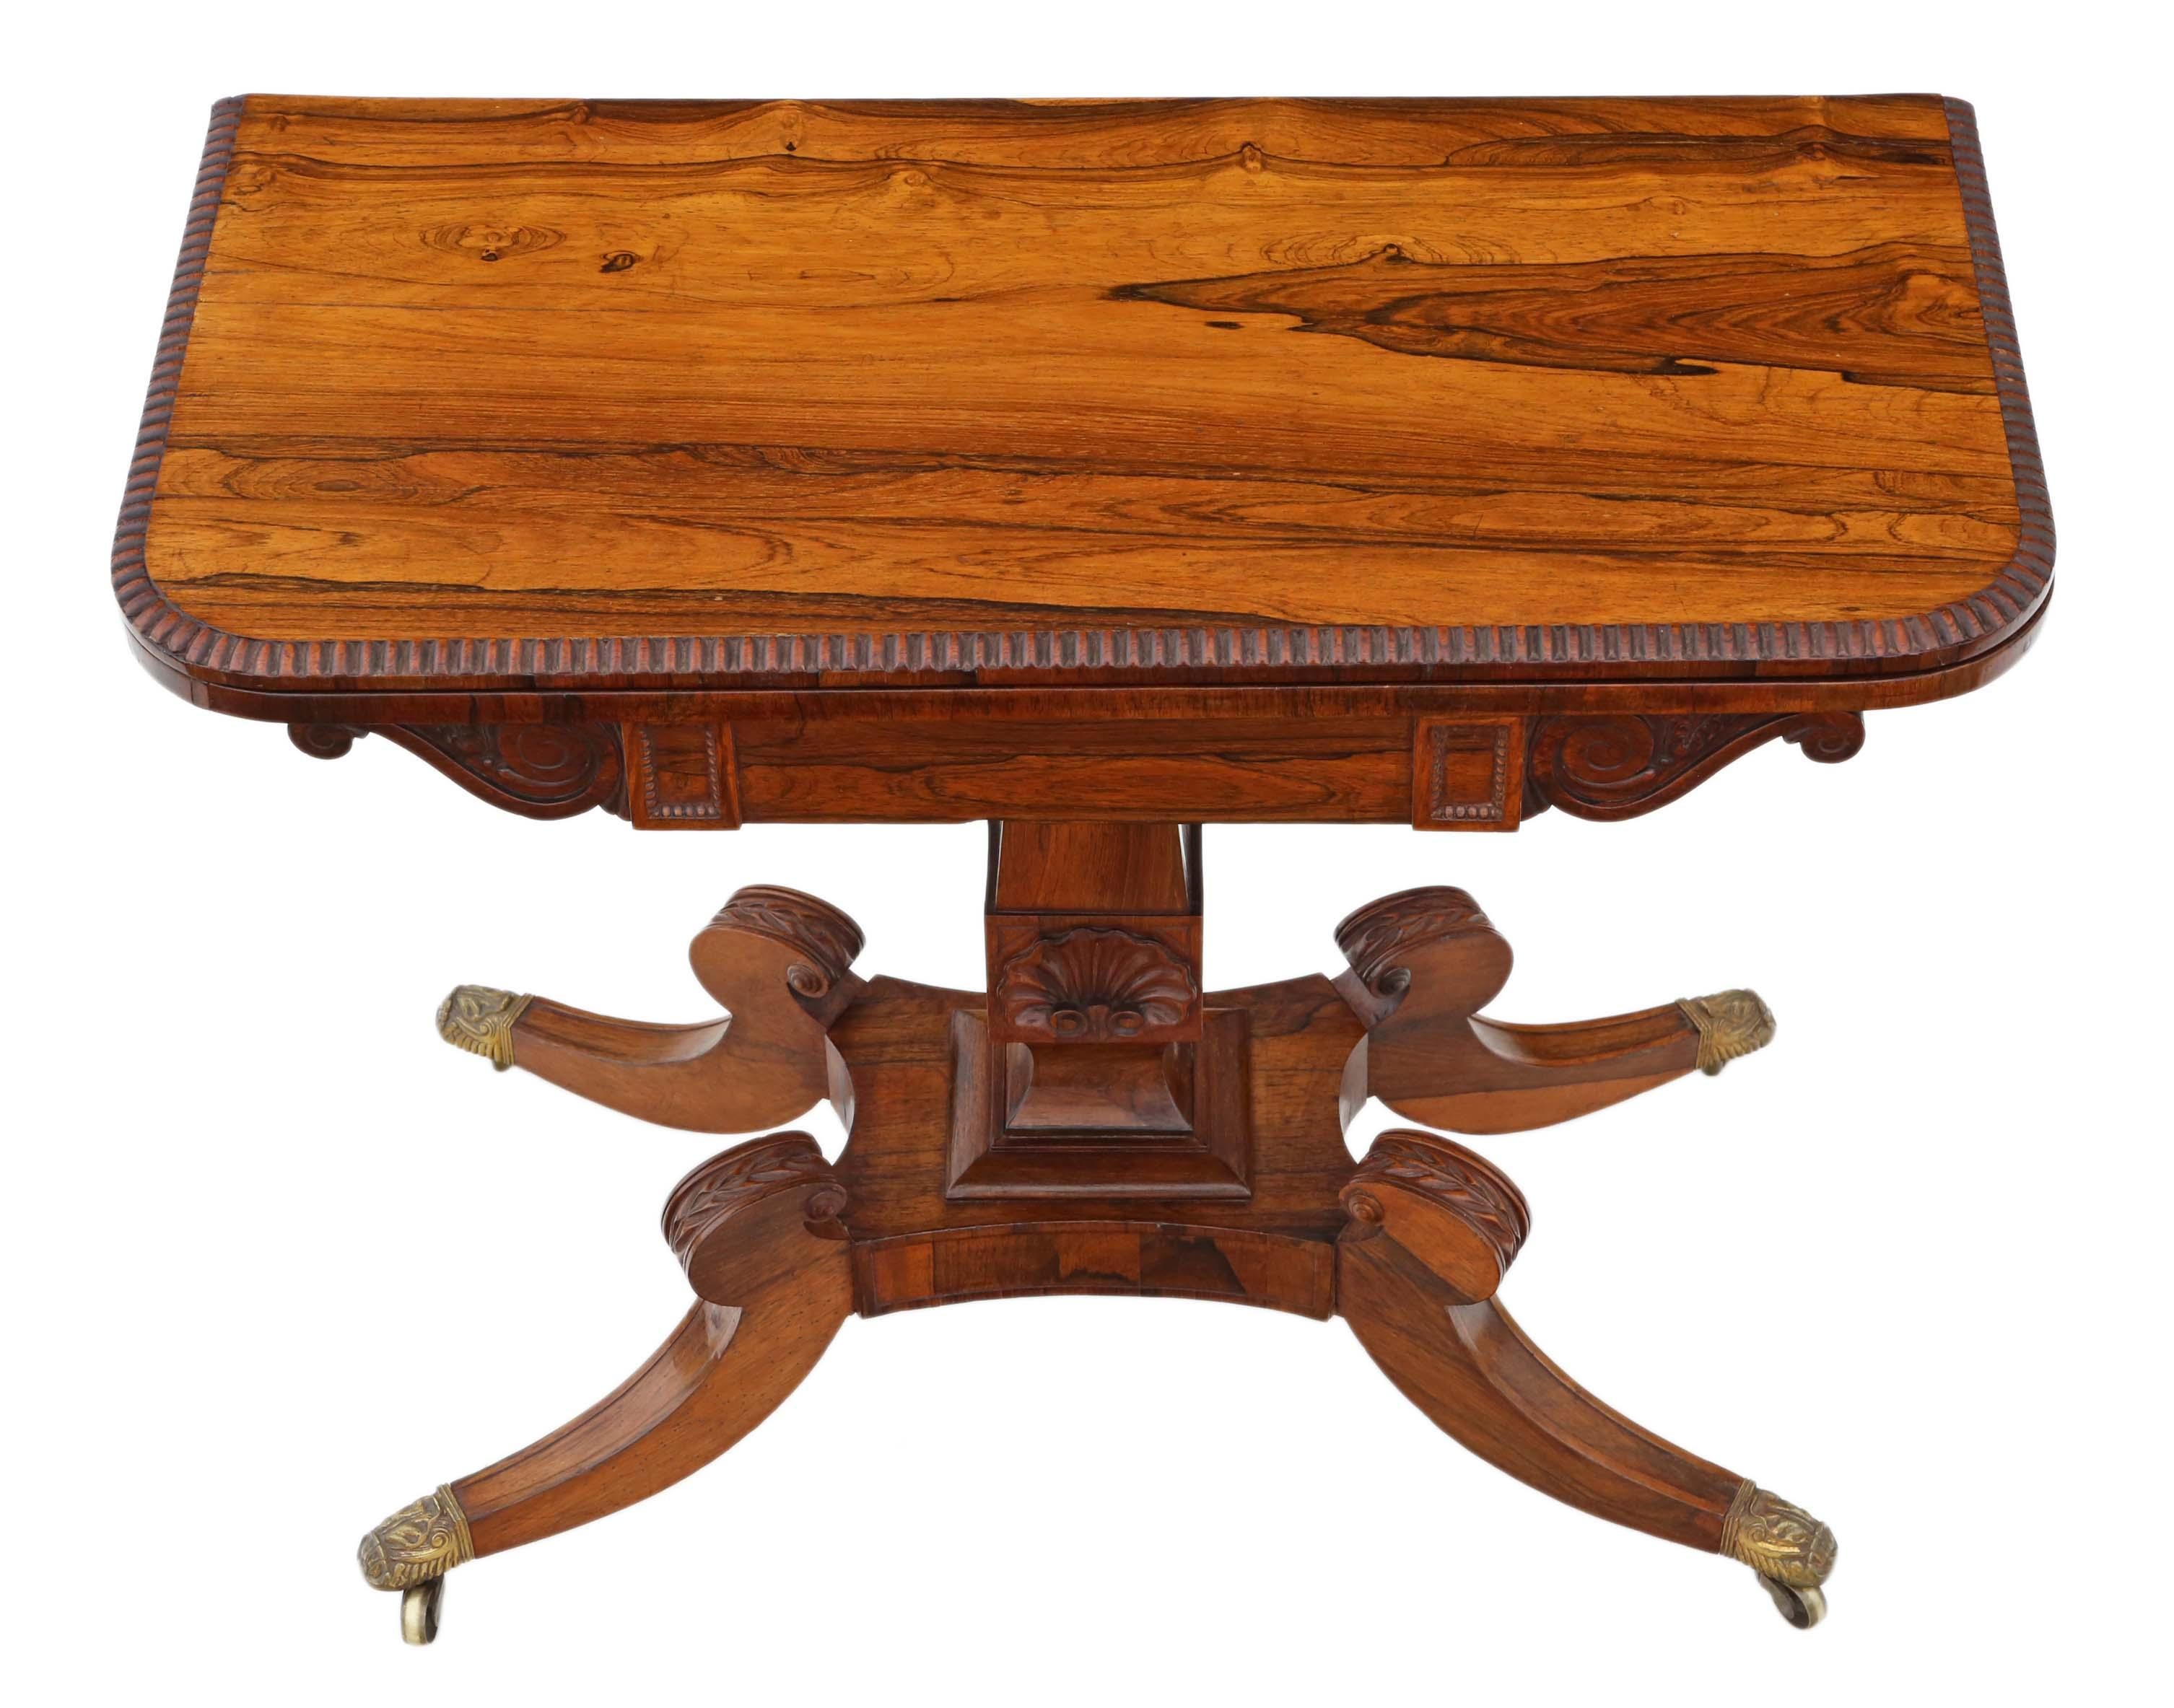 Antiker, hochwertiger Regency-Tisch (um 1825) aus Palisanderholz, klappbarer Tee- oder Konsolentisch.
Dies ist ein schöner Tisch von außergewöhnlicher Qualität.
Solide, ohne lose Verbindungen.
Rollen aus Messing.
Der Tisch hat eine wunderschöne